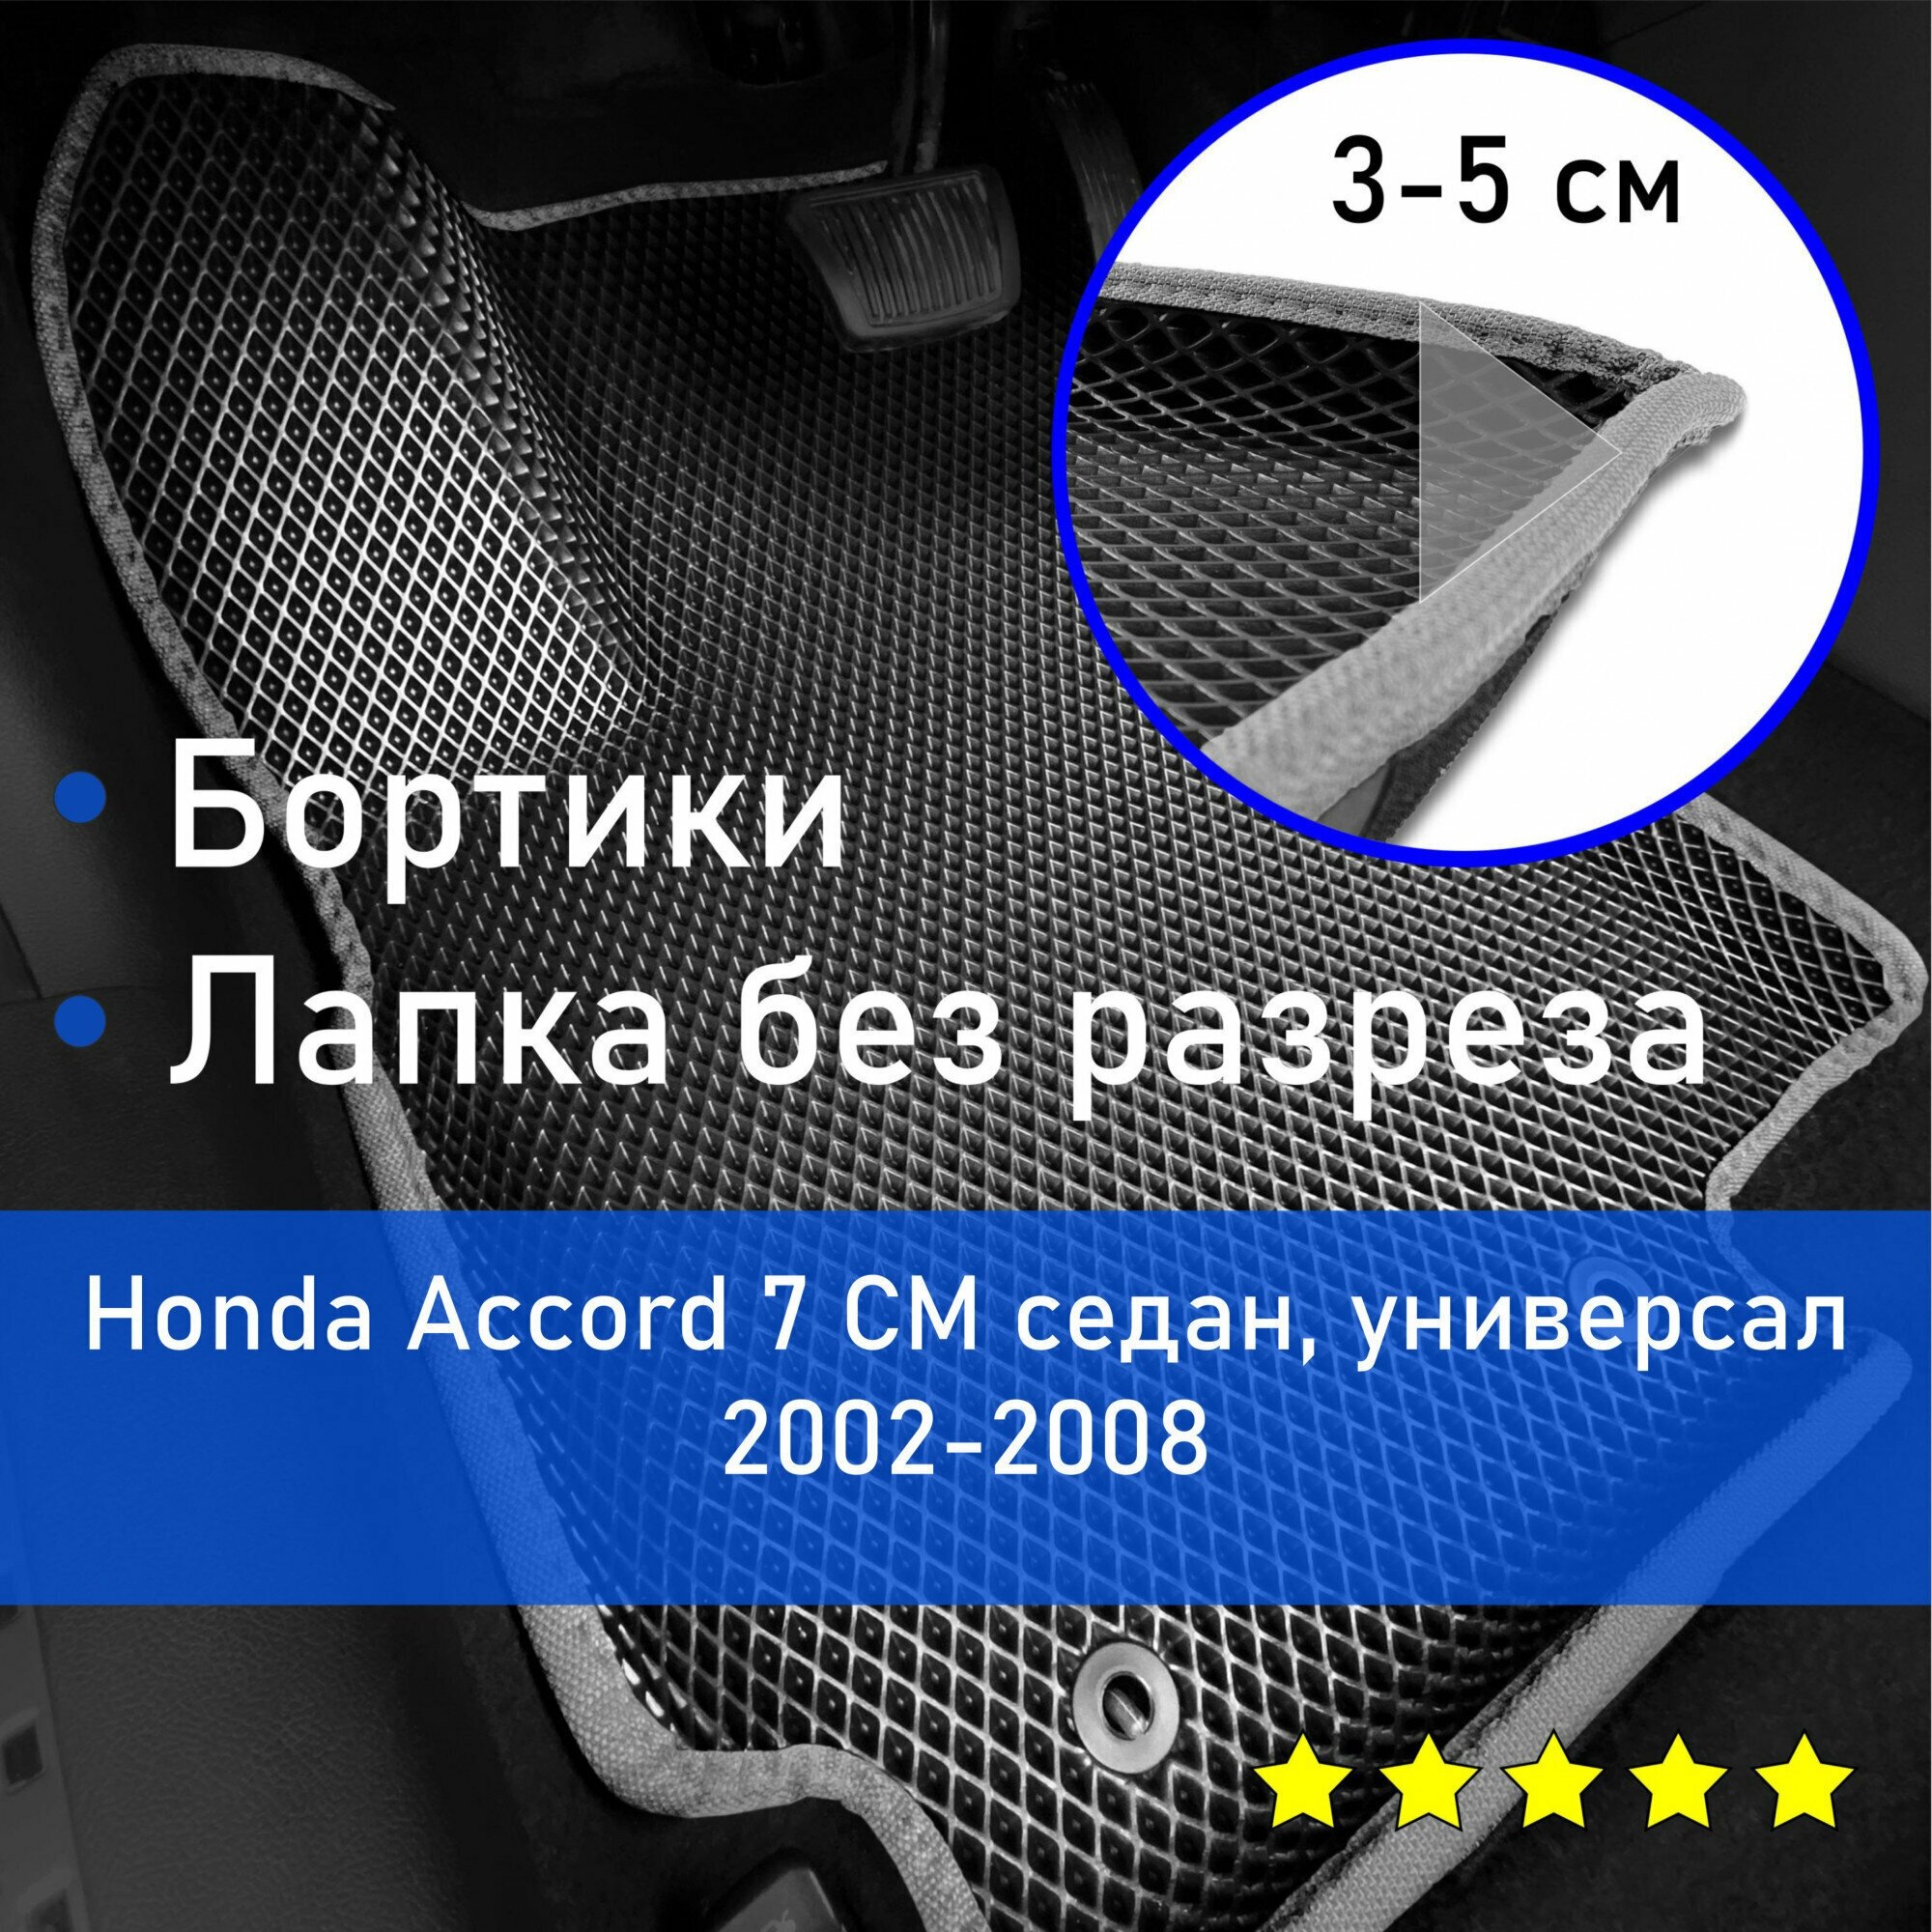 3Д коврики ЕВА (EVA, ЭВА) с бортиками на Honda Accord 7 CM 2002-2008 седан/универсал Хонда Аккорд (Акорд) Левый руль Ромб Черный с серой окантовкой